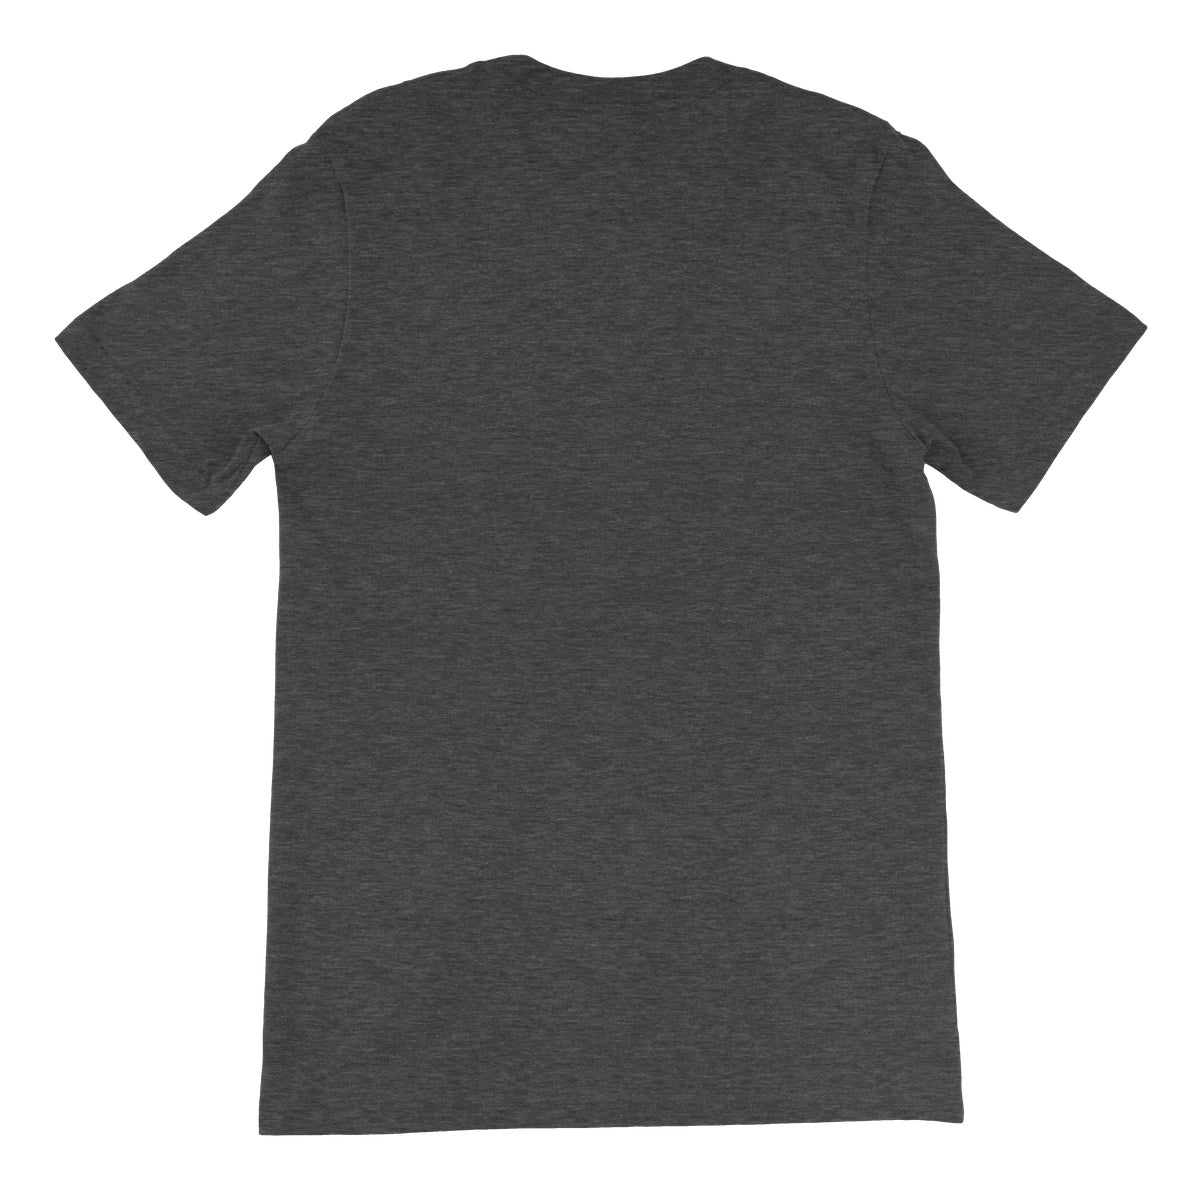 Morse Theory, Upright Unisex Short Sleeve T-Shirt